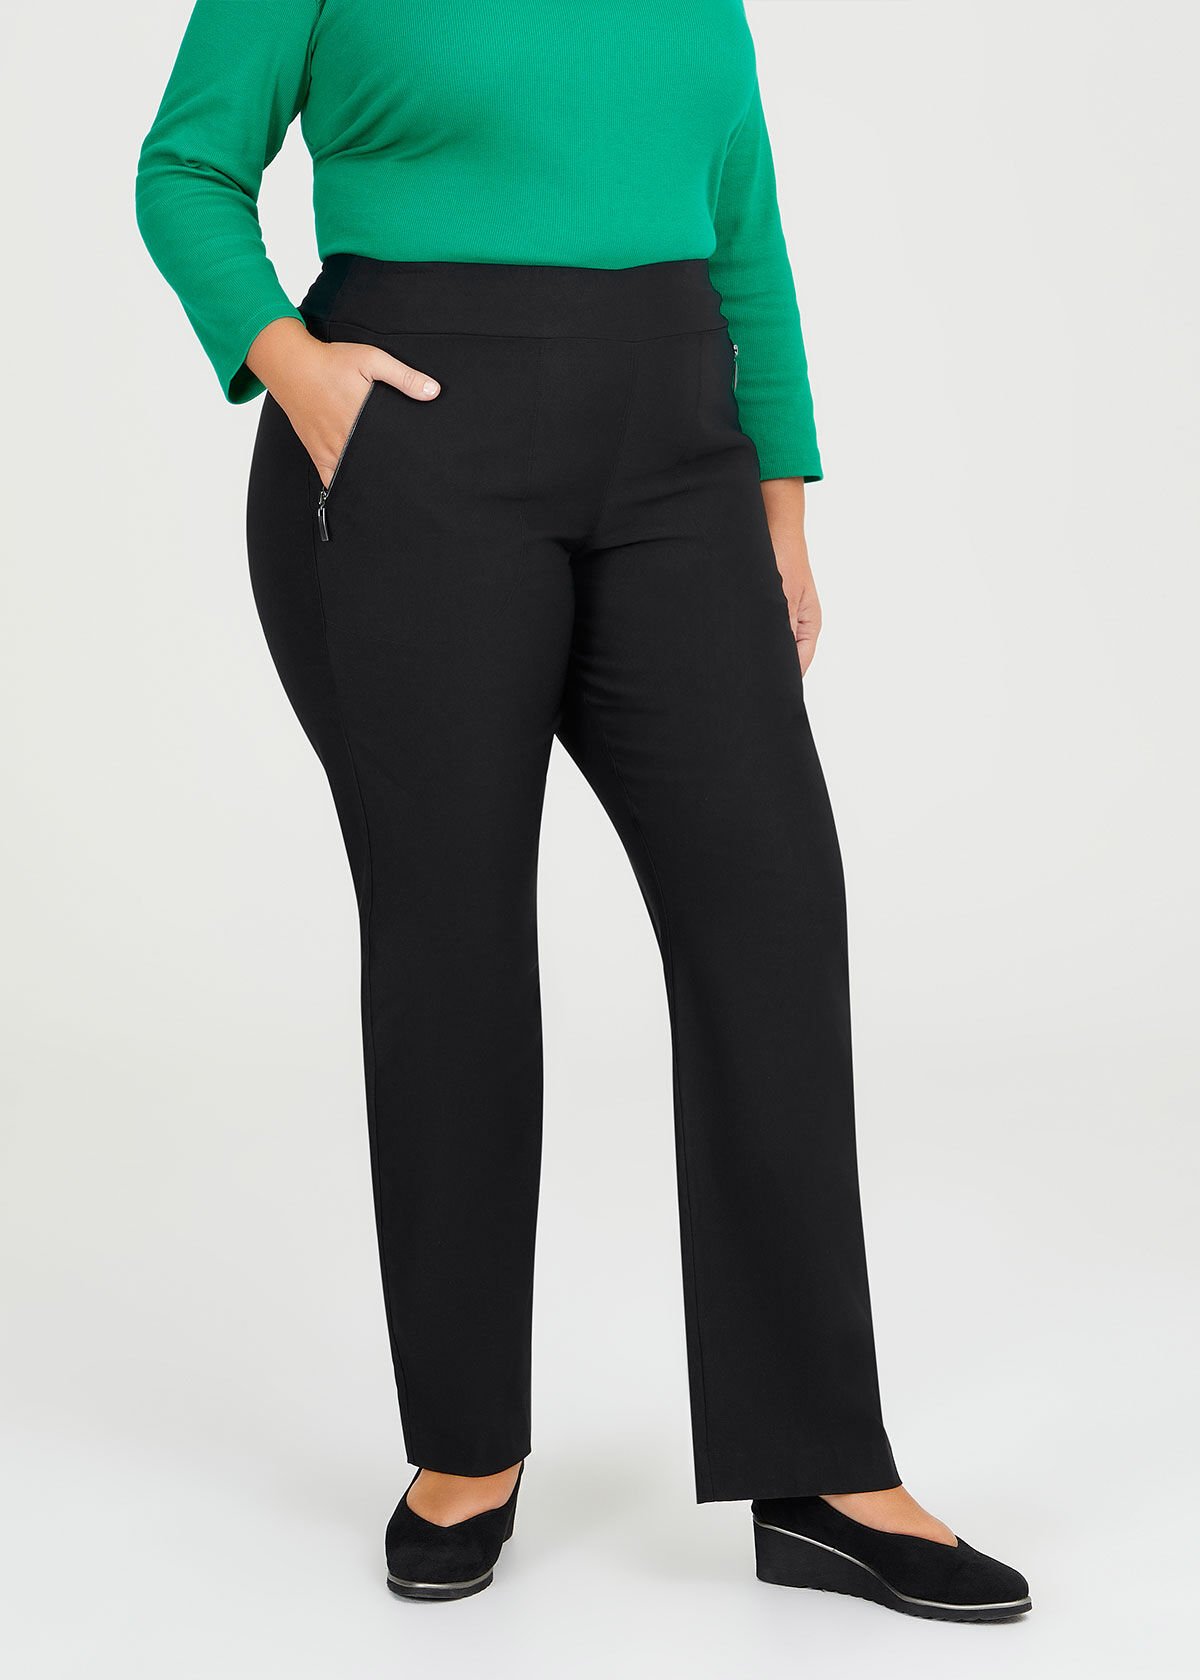 Black Work Pants Womens Plus Size | Work Wear Black Pants Female - Women  Trousers - Aliexpress